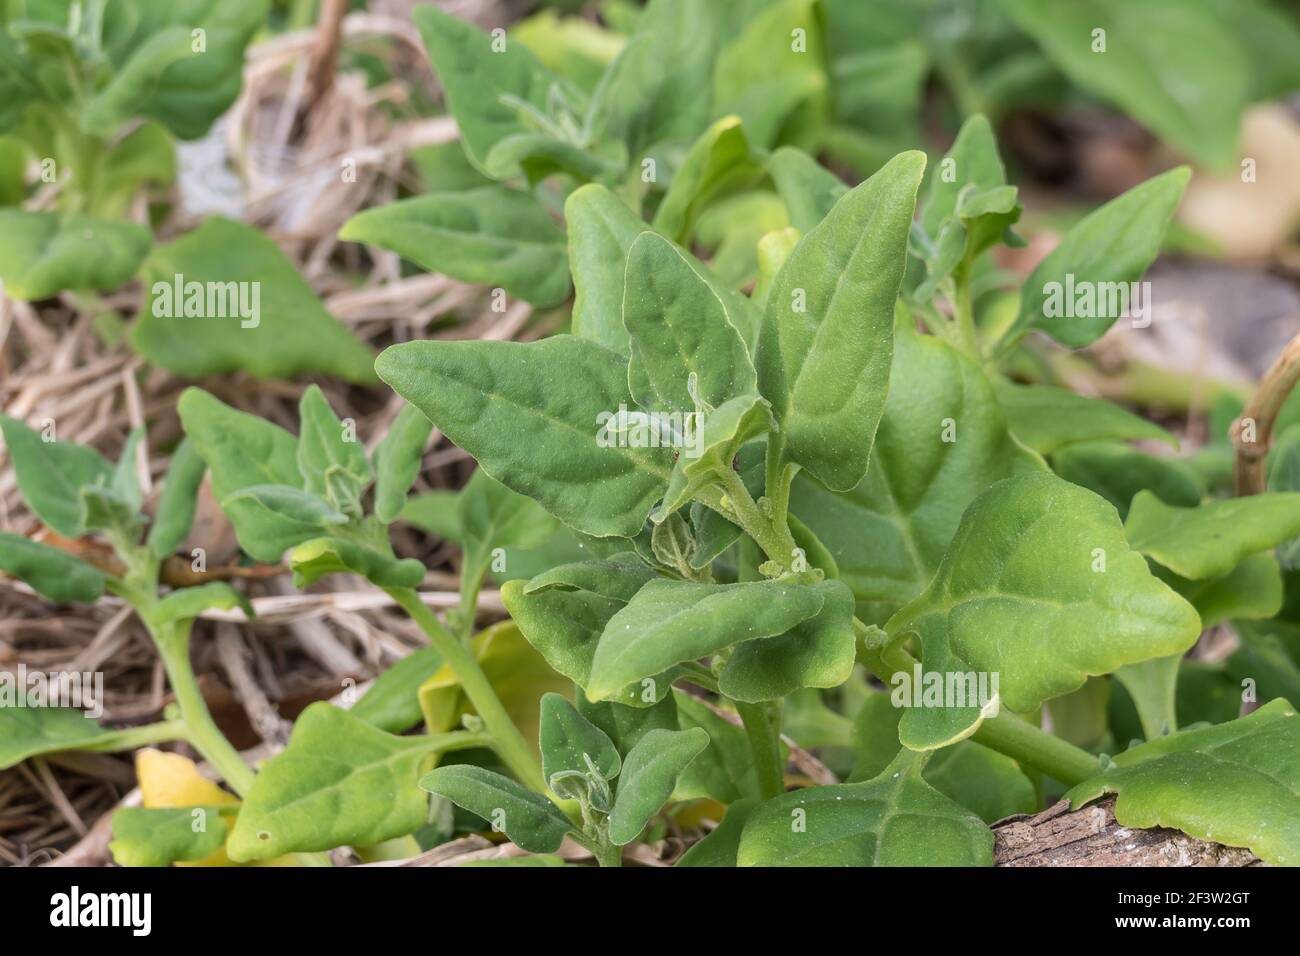 Tetragonia tetragonoides plants growing outdoors Stock Photo